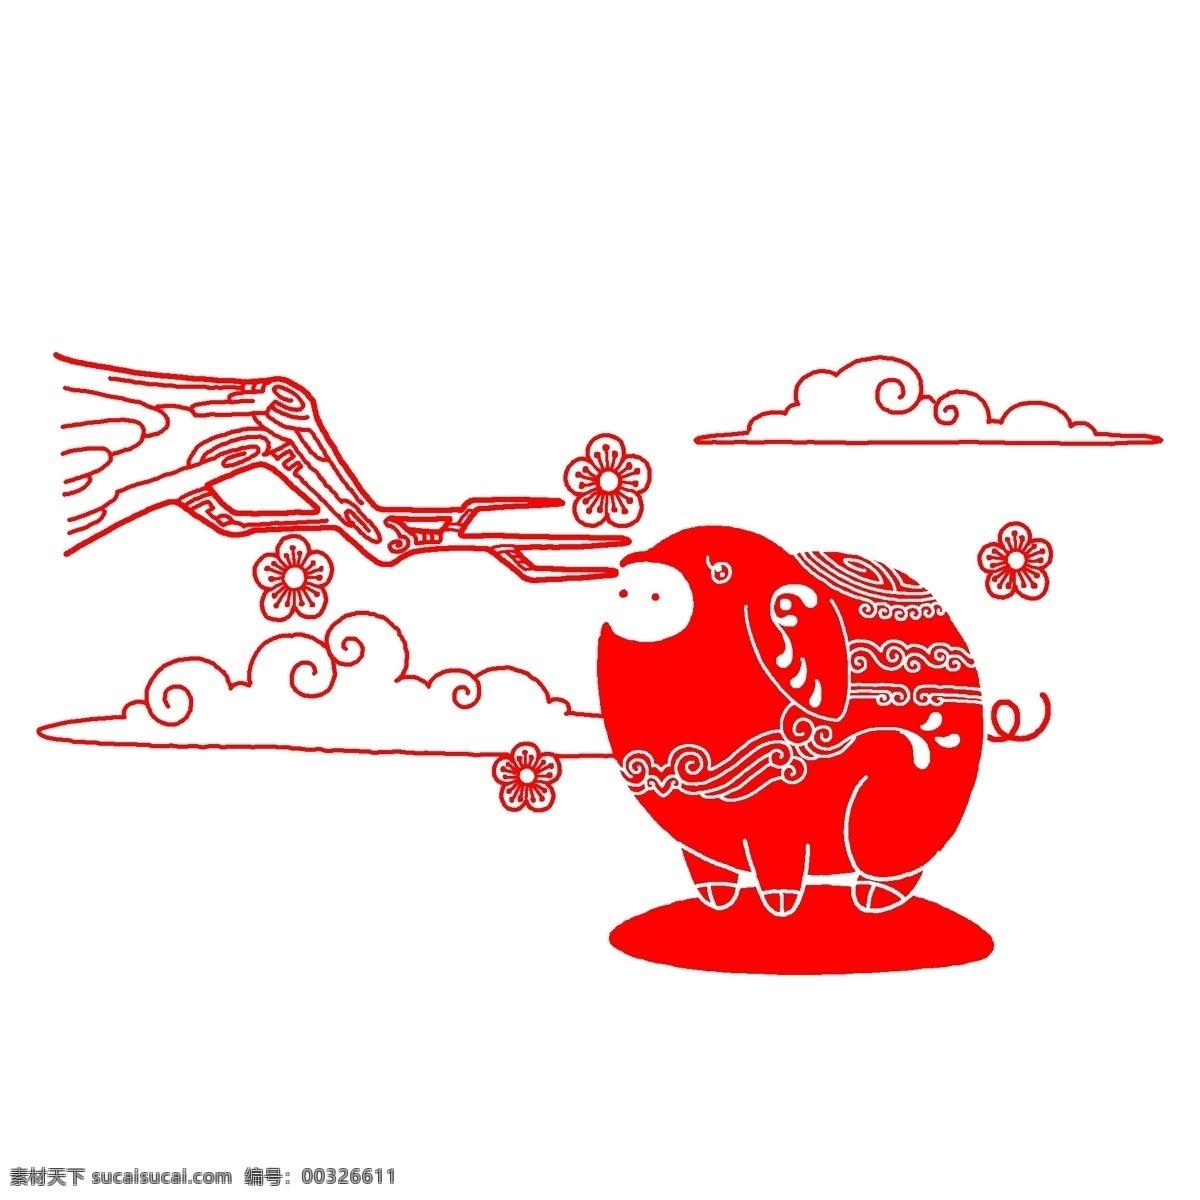 手绘 红色 剪纸 小 猪 插画 红色的剪纸 漂亮的剪纸 红色的小猪 镂空的梅花 手绘剪纸插画 创意剪纸插画